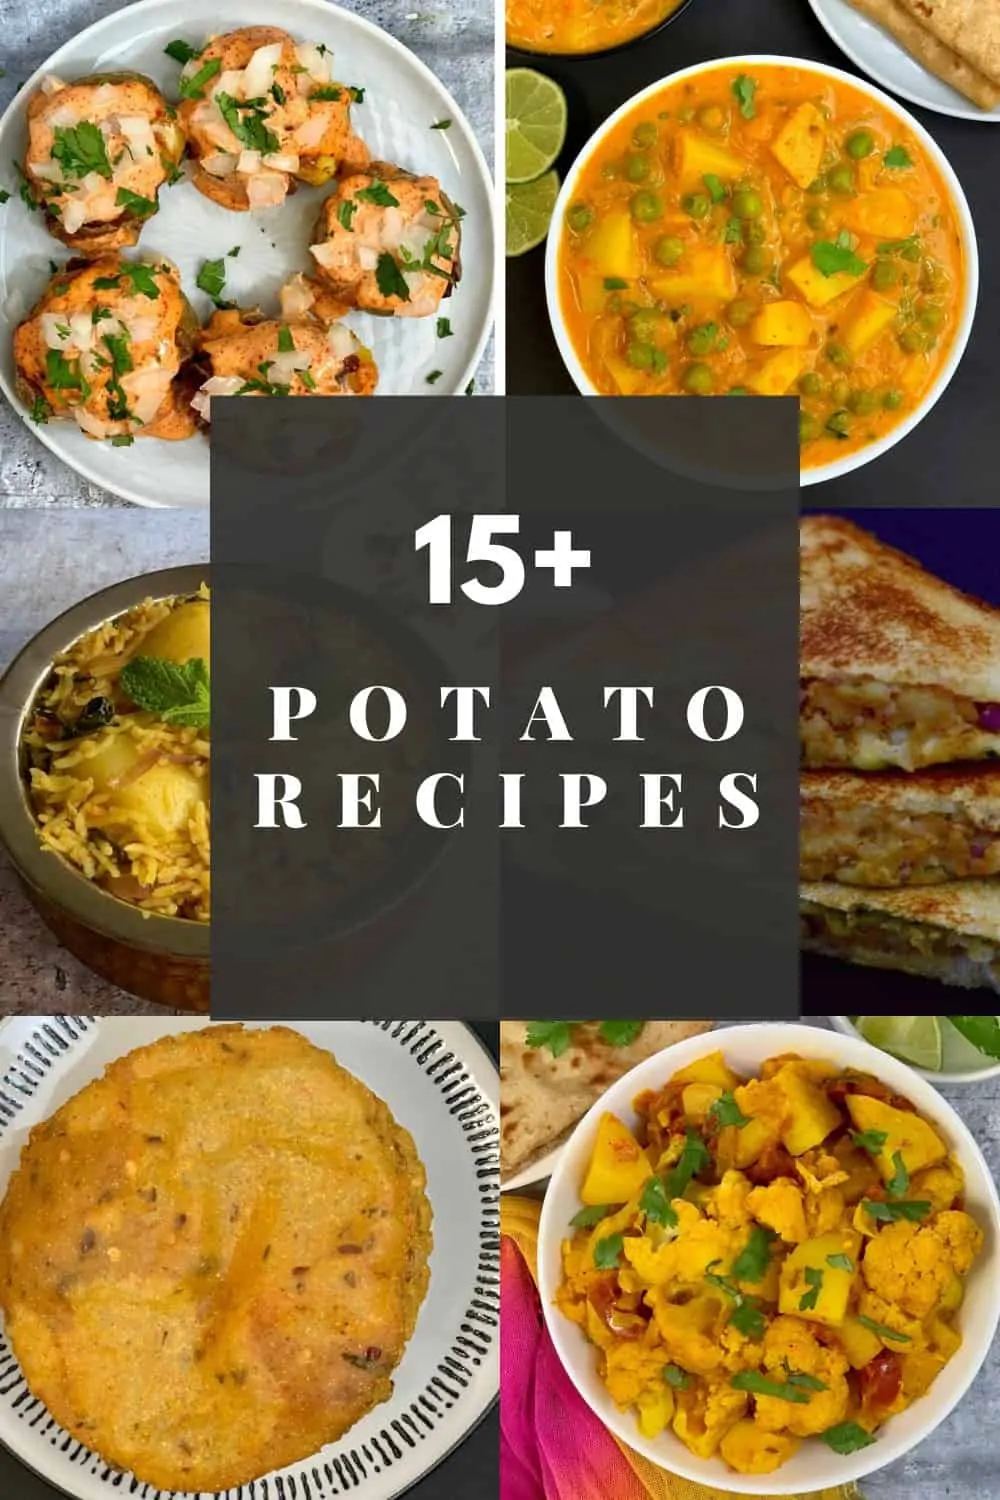 Indian Potato Recipes/instant pot potato recipes